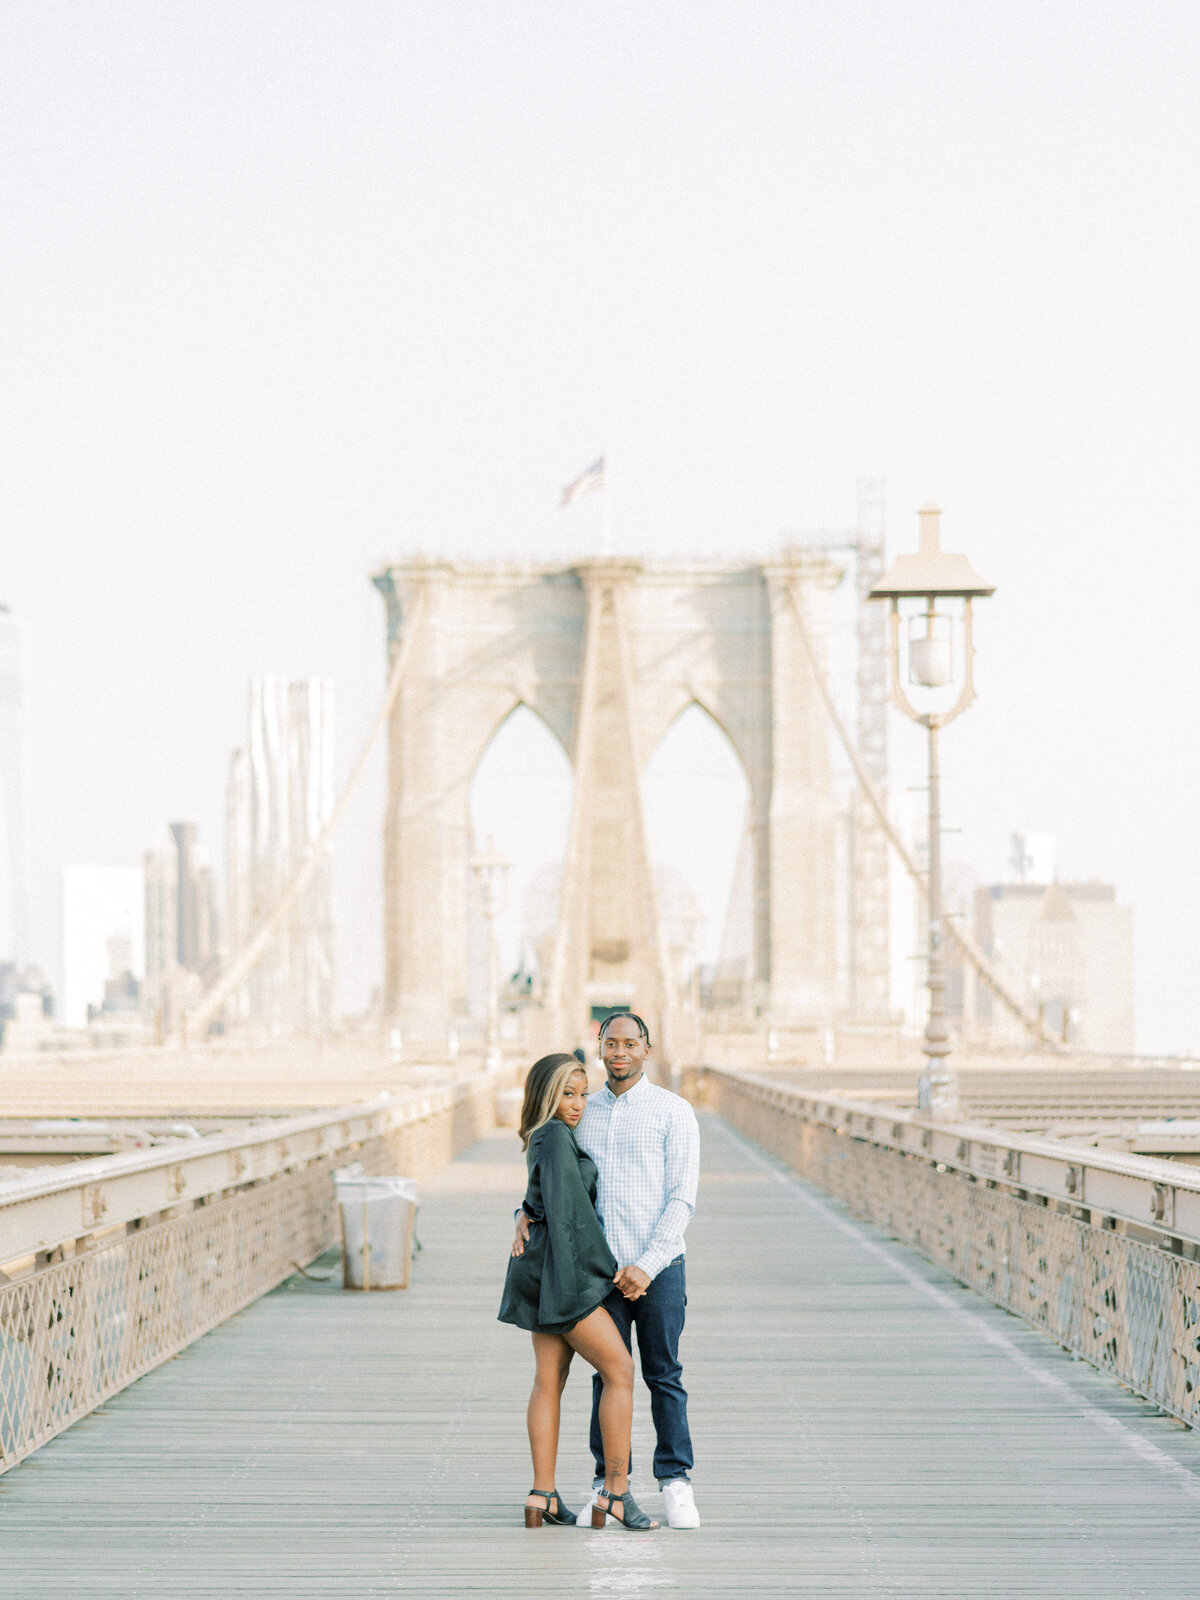 Brooklyn Bridge and DUMBO Sunrise, Engagement Session | Amarachi Ikeji Photography 25